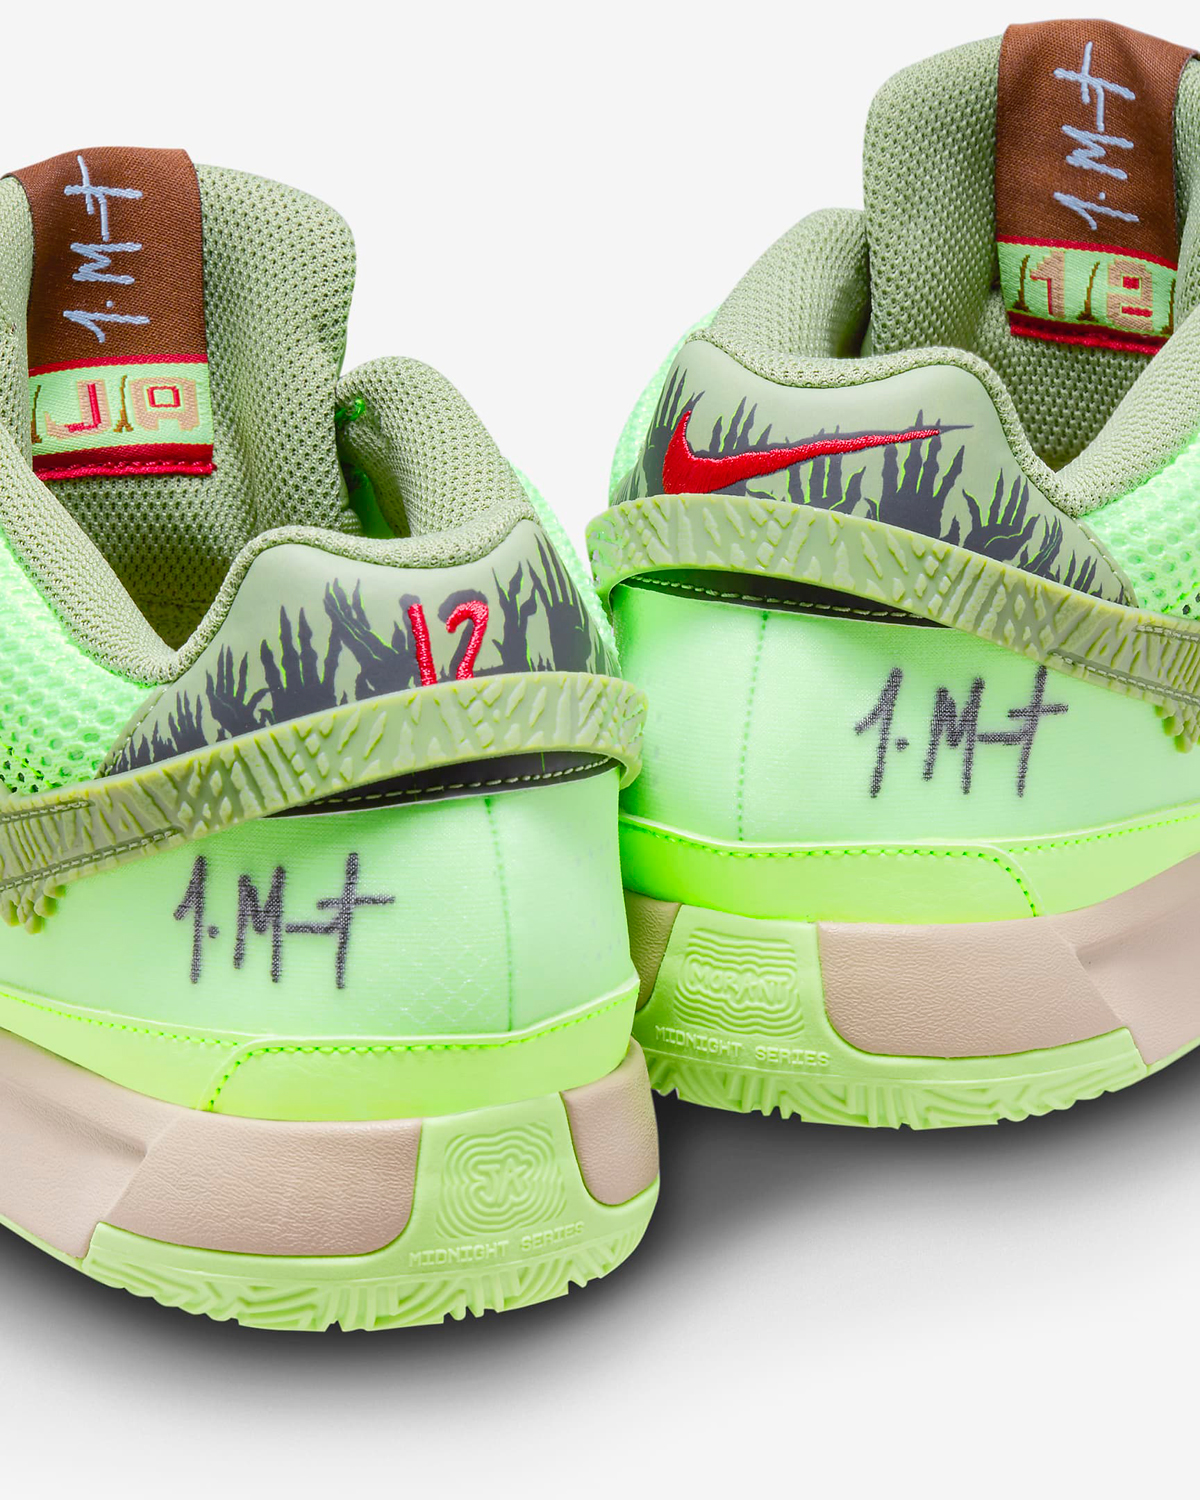 Nike Ja 1 Zombie Halloween Release Date 10